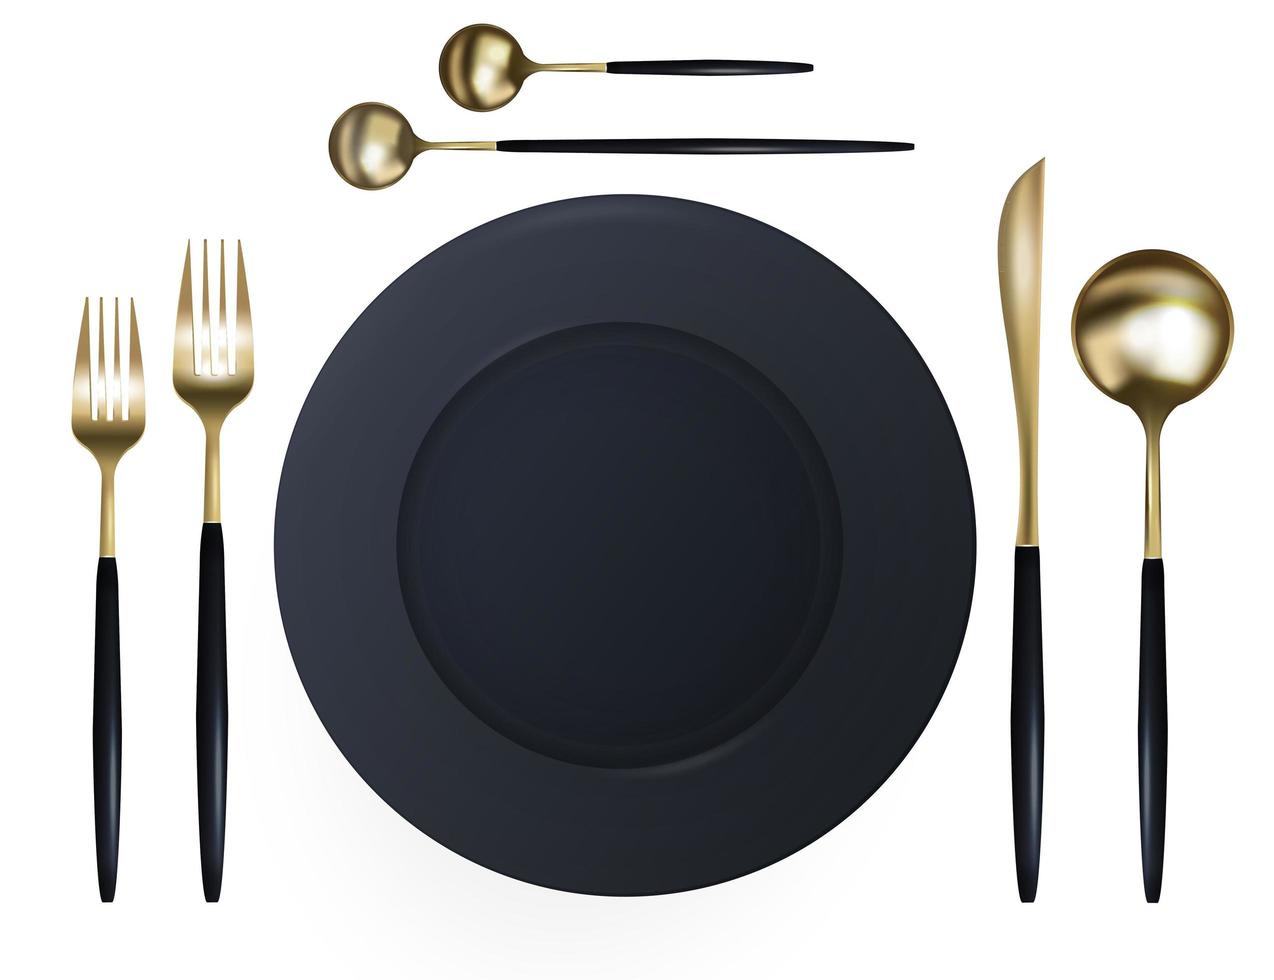 assiette noire avec un ensemble de fourchettes, couteaux, cuillères avec une teinte dorée. isolé sur fond blanc. décoration design alimentaire. réaliste. vecteur